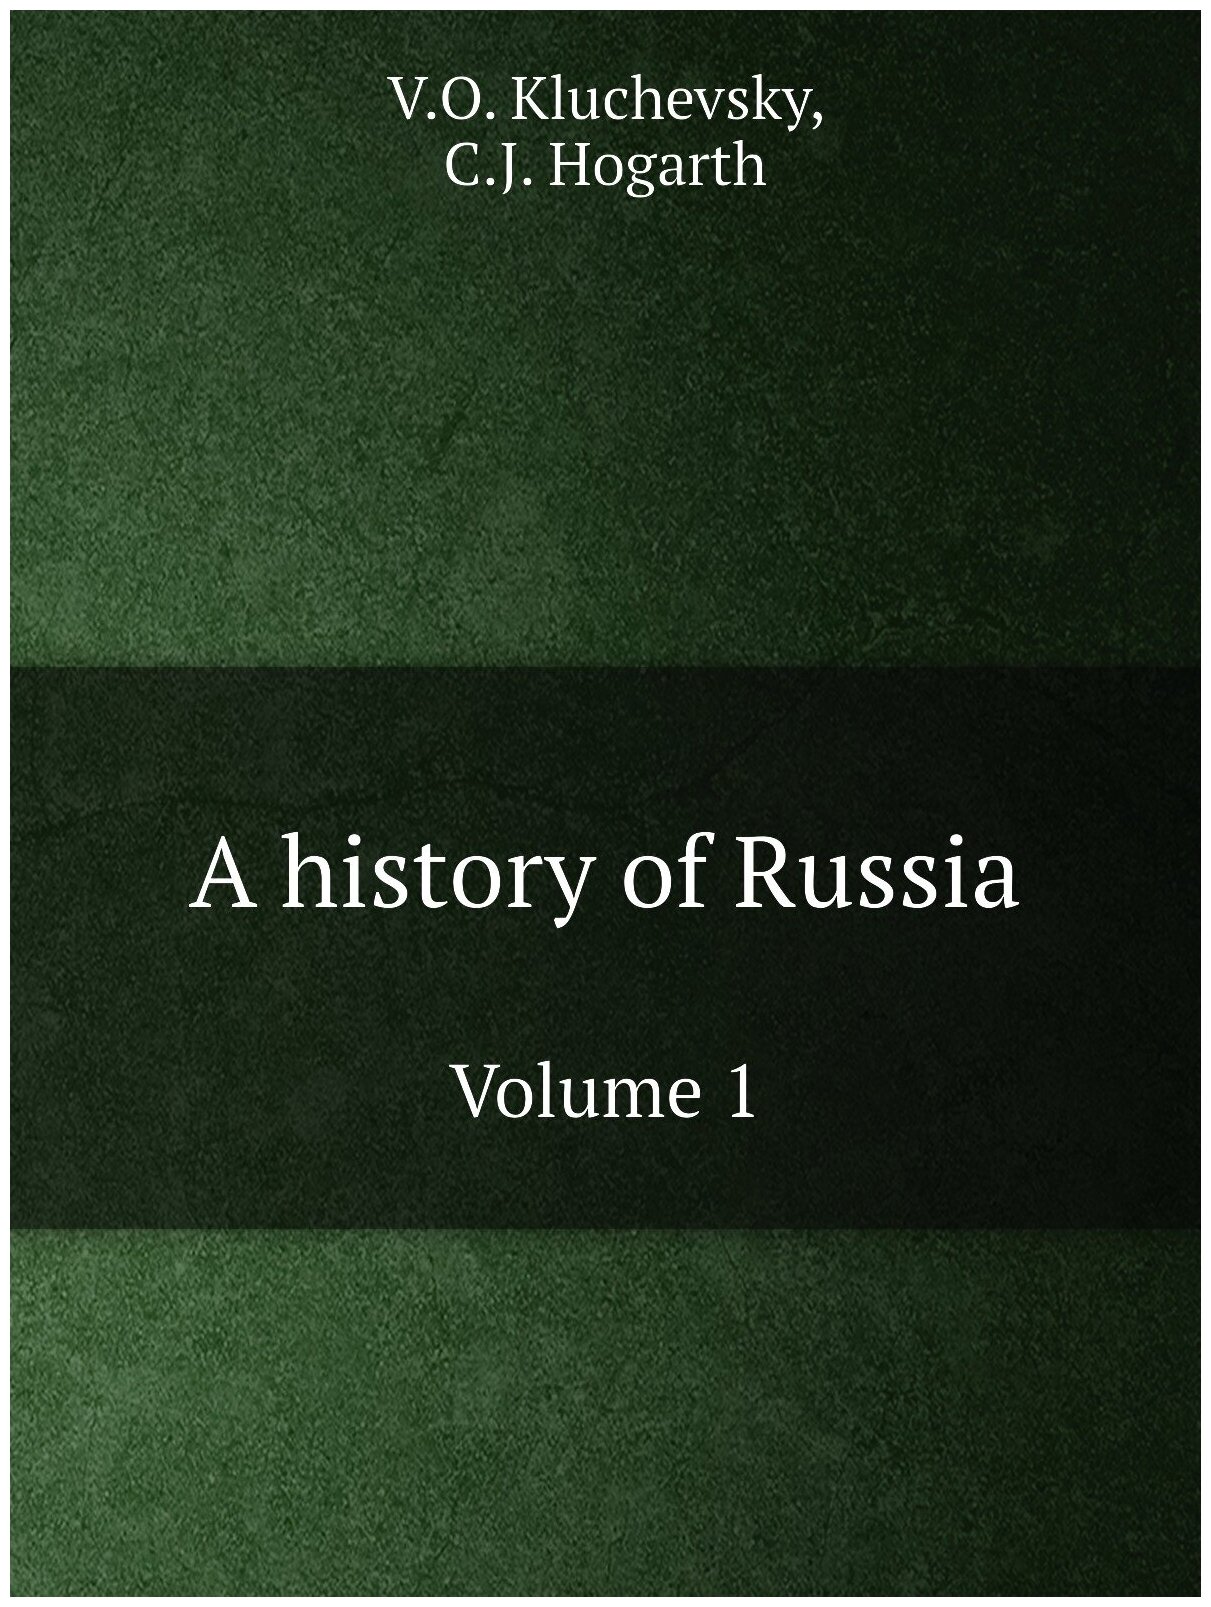 A history of Russia. История России: на англ. яз.